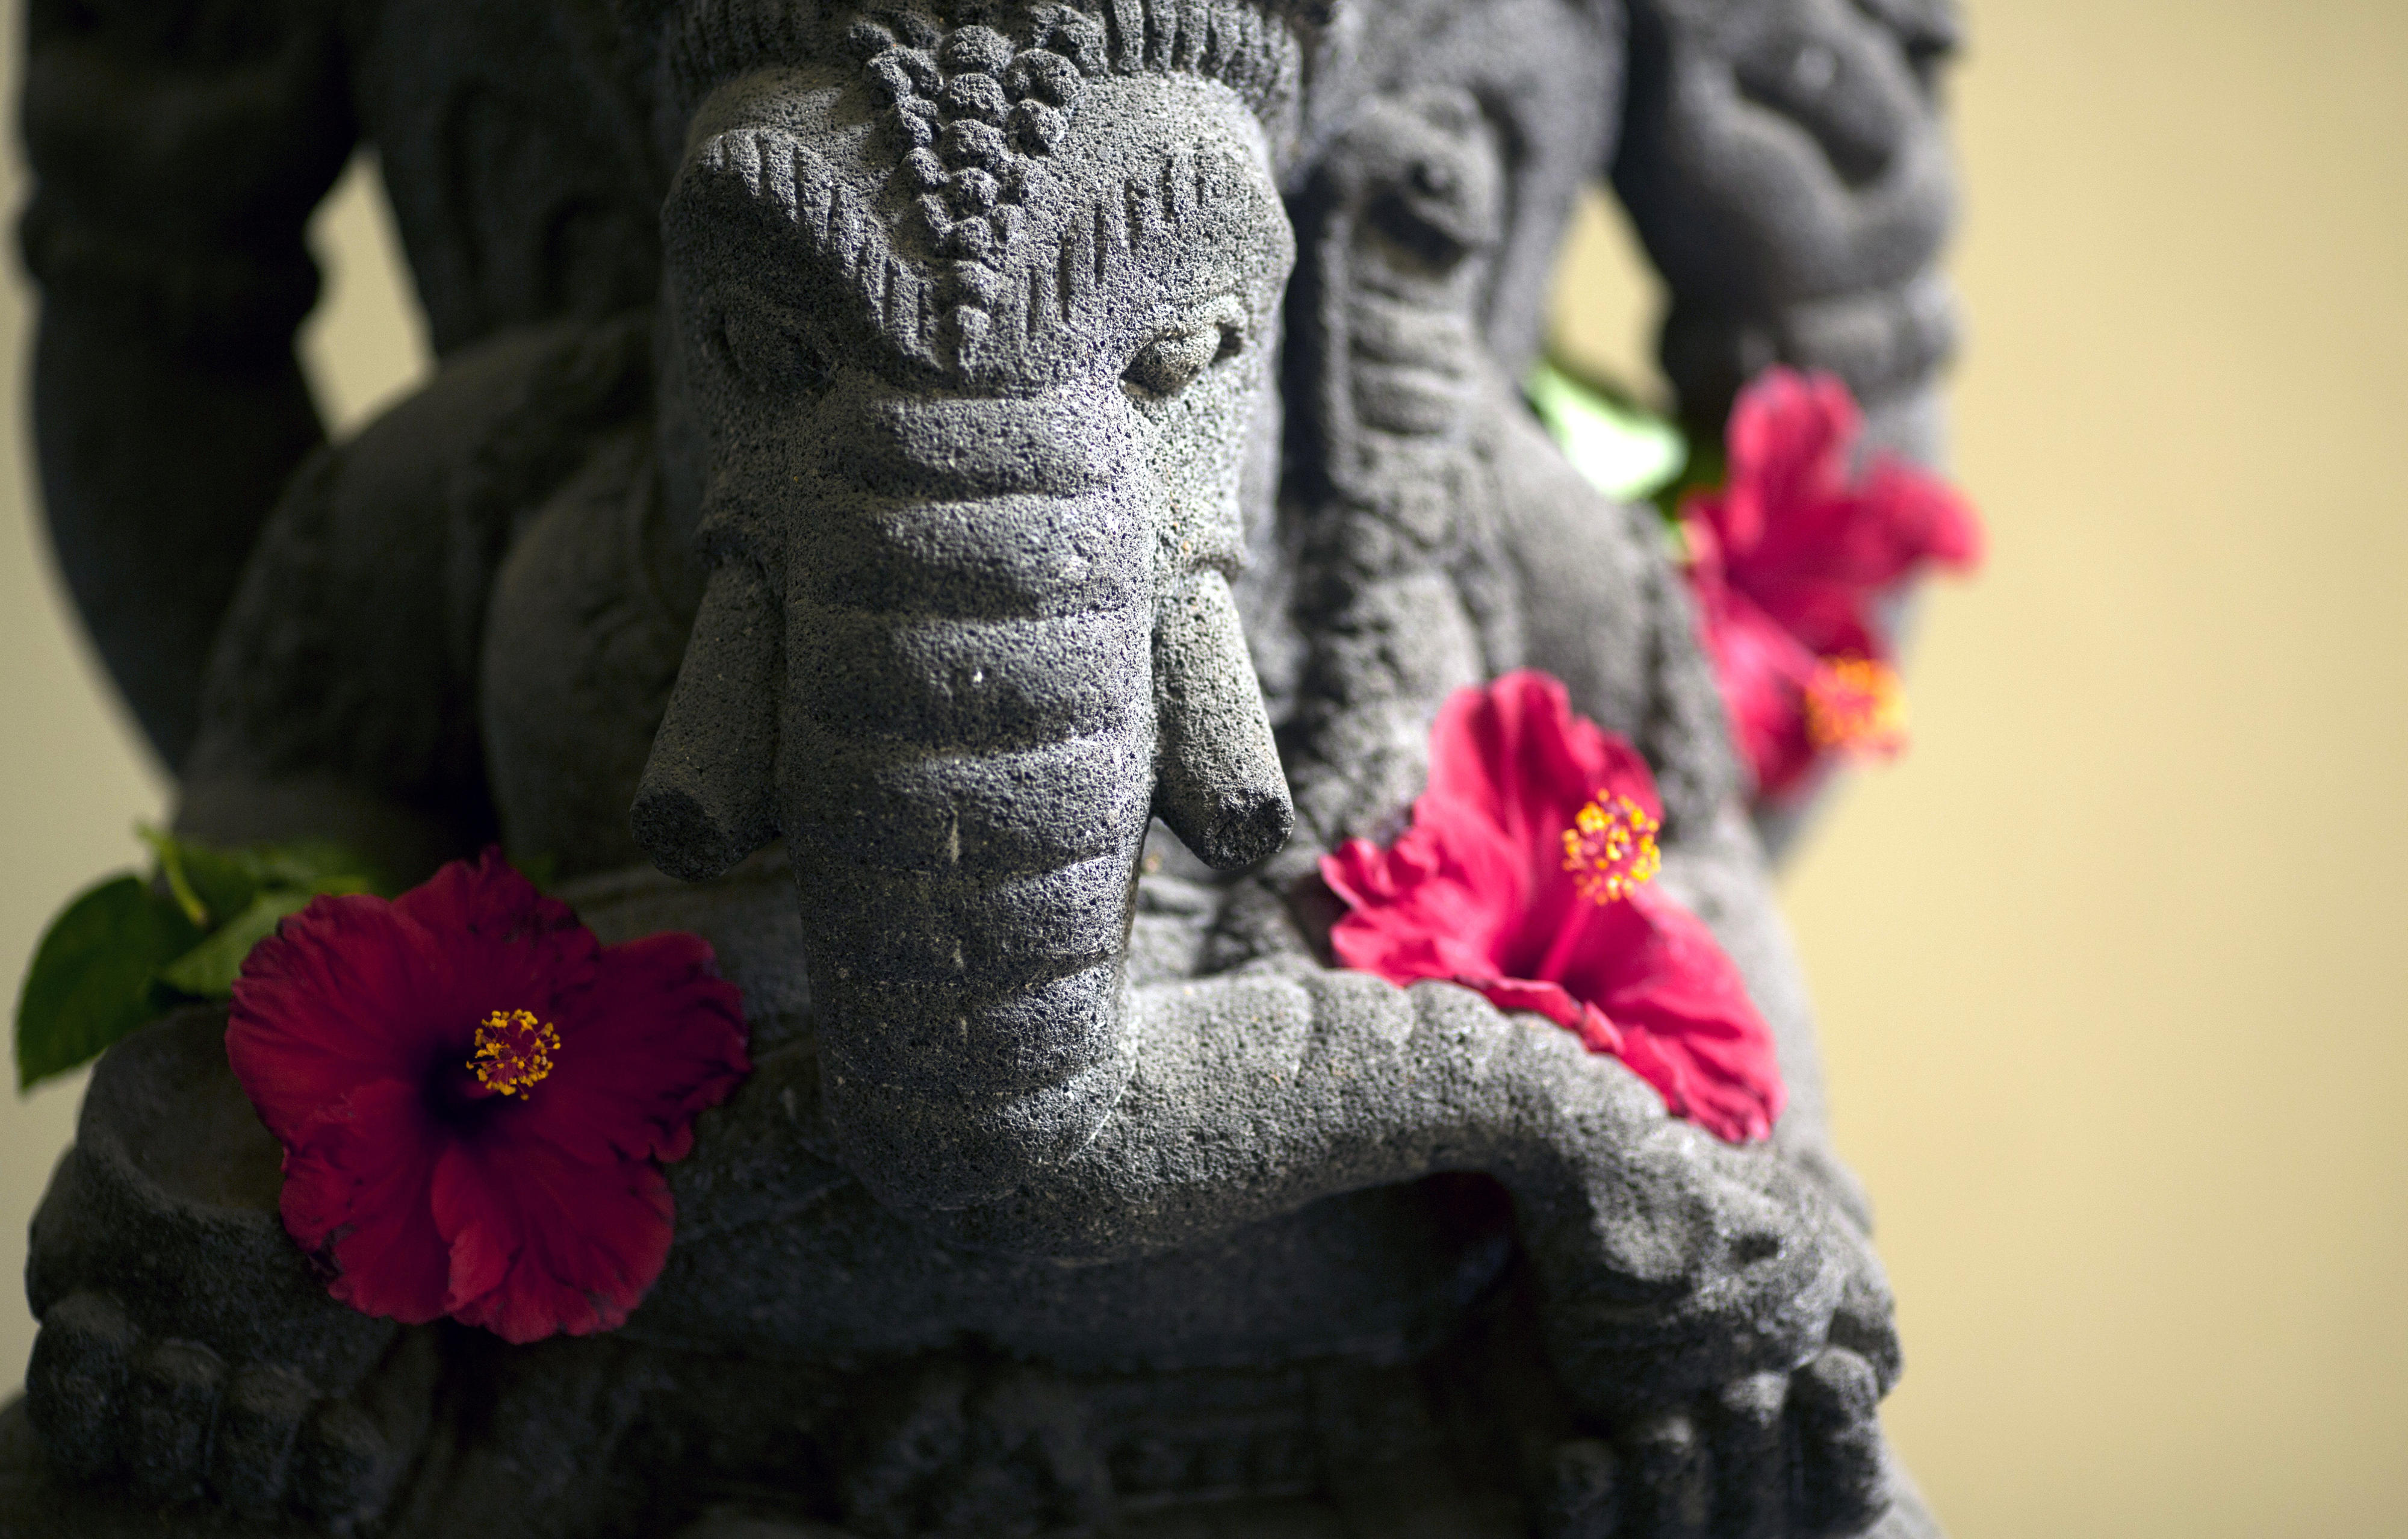 Steinerner Elefant mit Hibiskusblüten, Abbild der hinduistischen Gottheit Ganesha, Jakarta, Indonesien